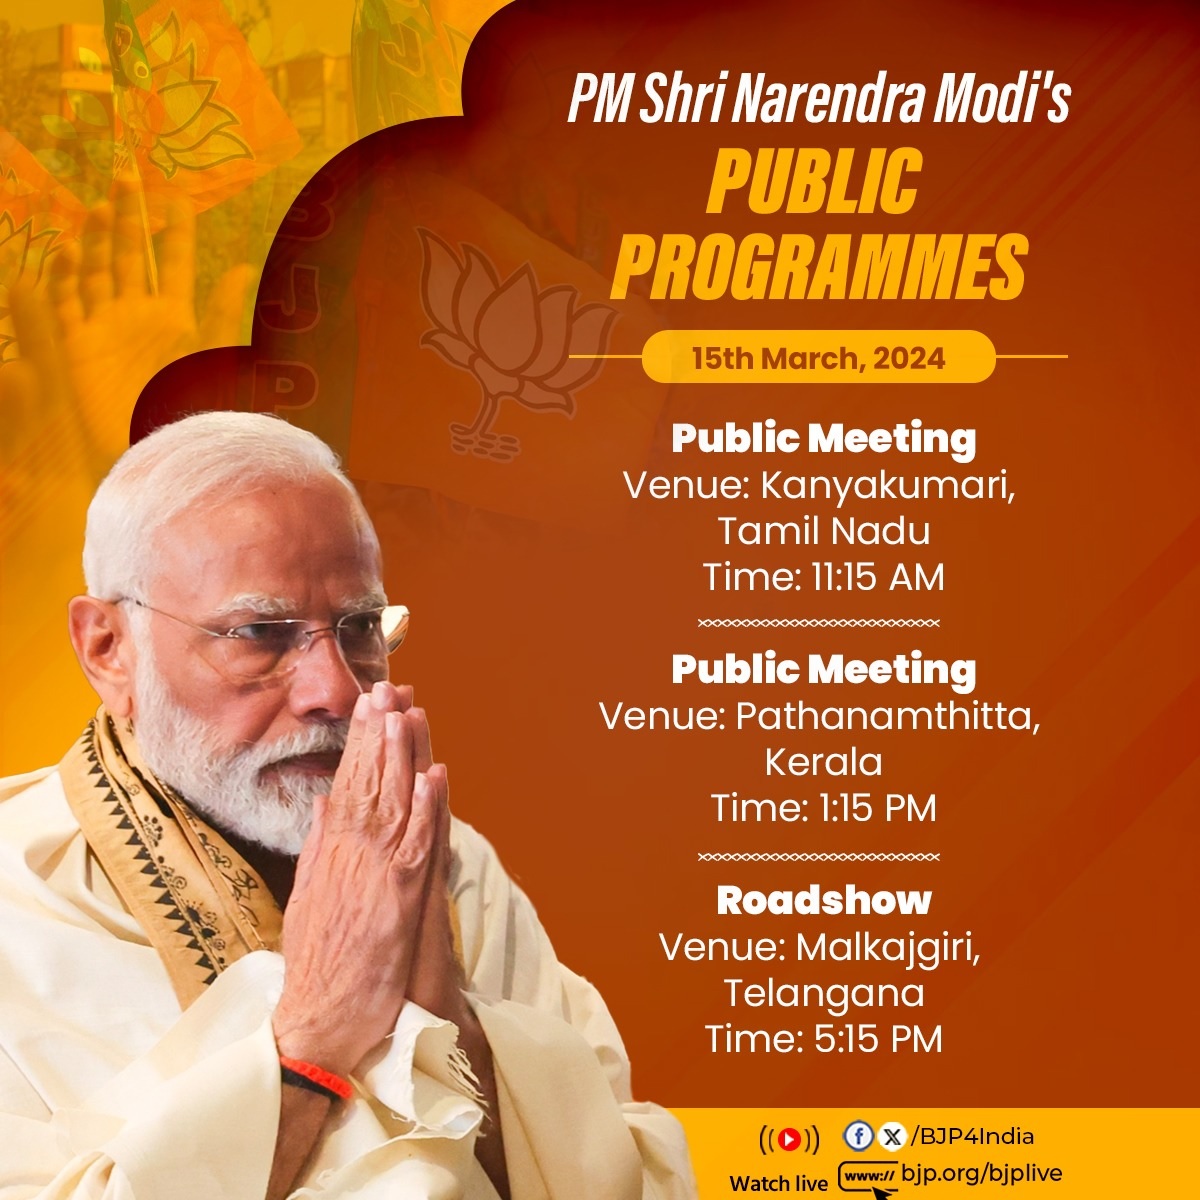 भाजपा के एक्स हैंडल में प्रधानमंत्री के कार्यक्रम को साझा किया गया है।